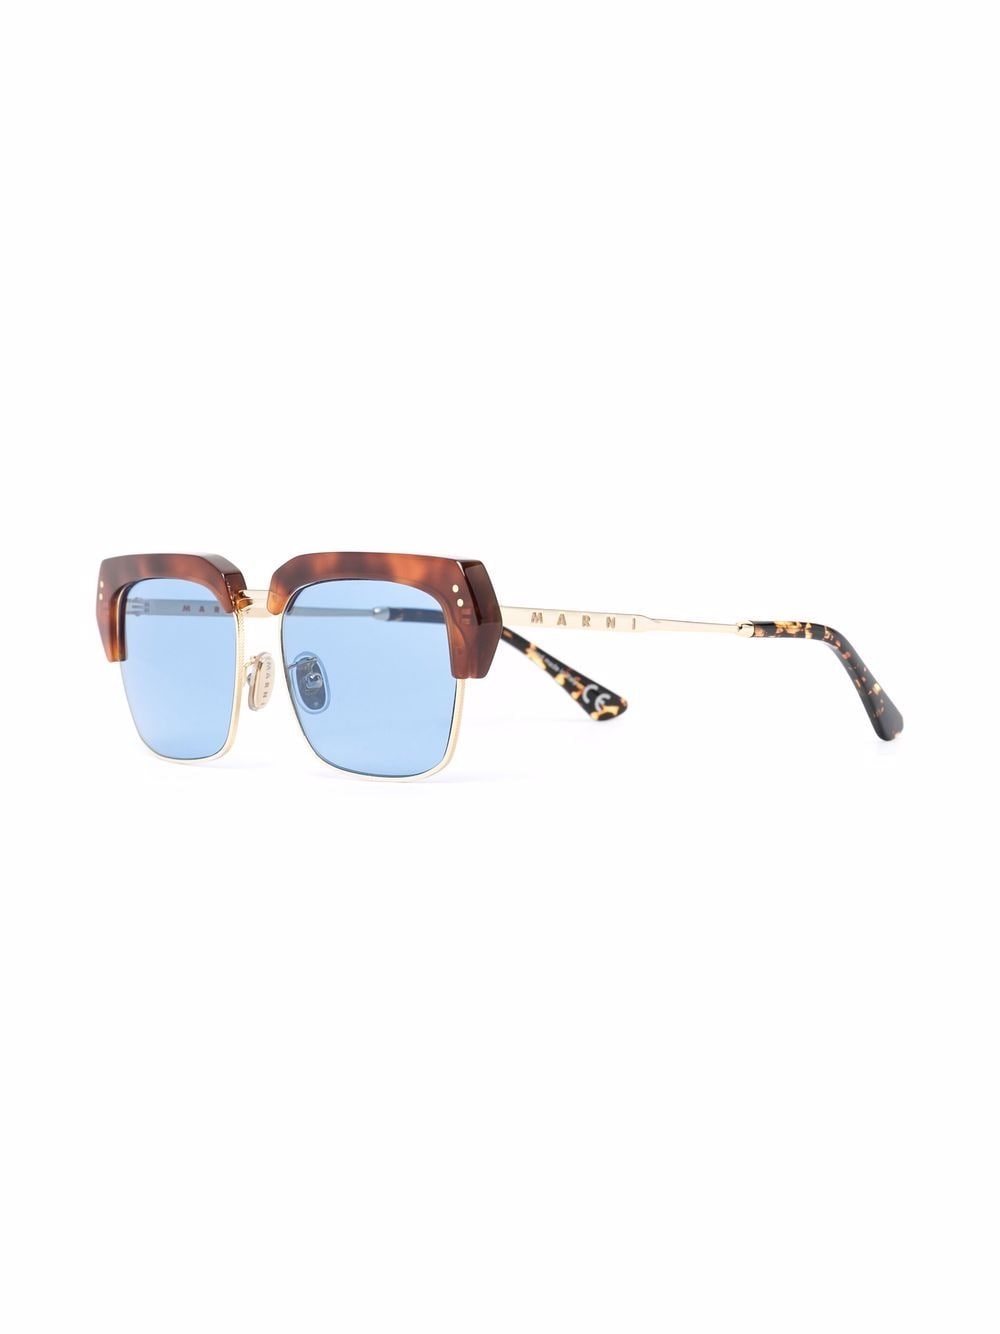 Marni Eyewear Zonnebril met schildpadschild design - Blauw